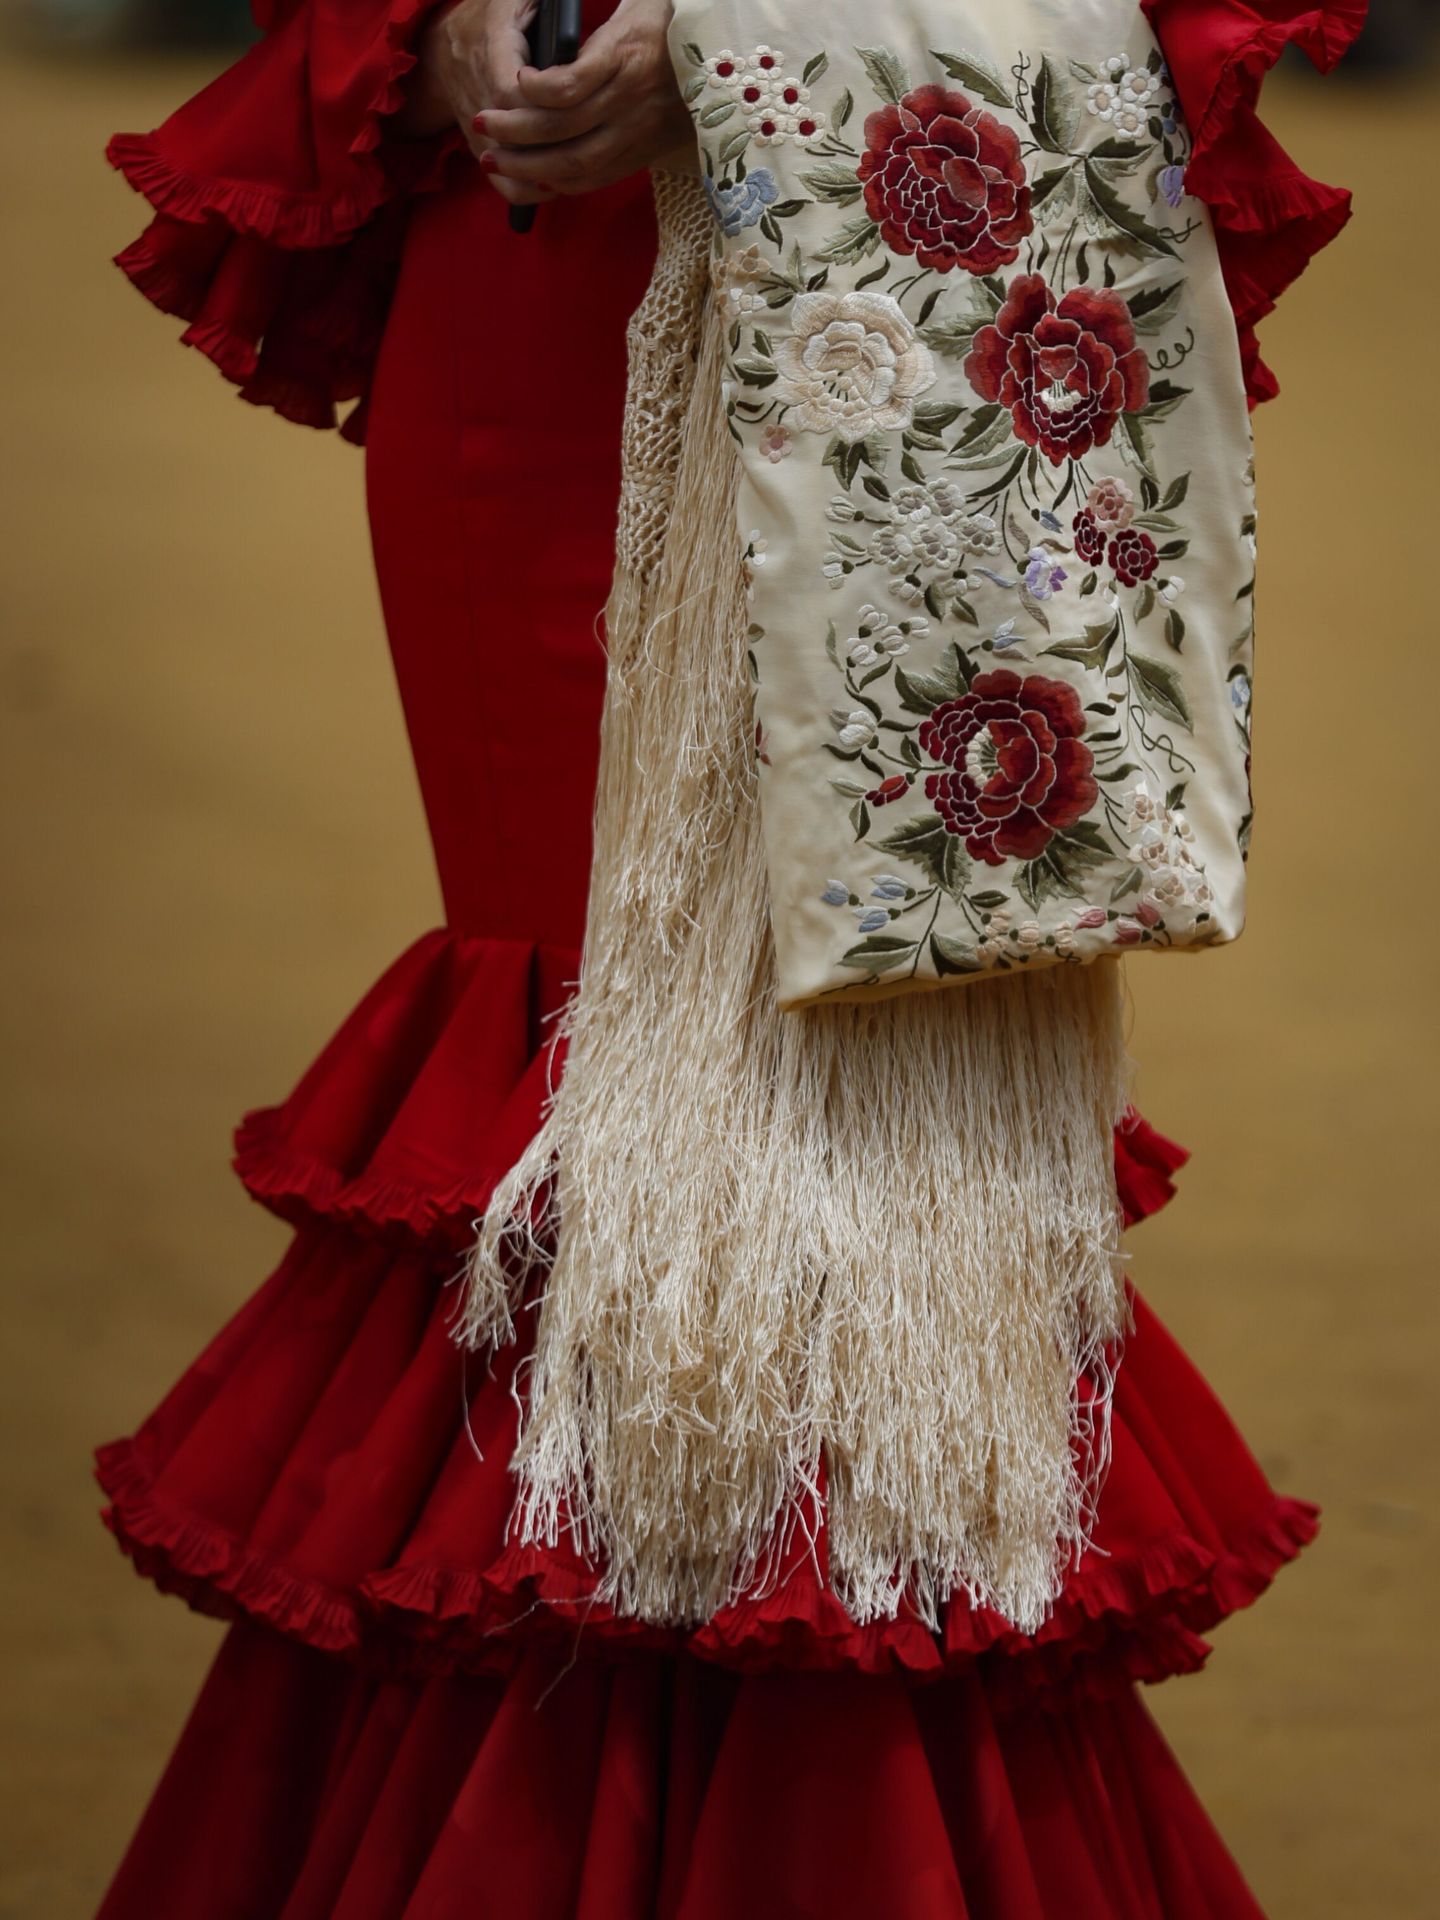 La moda flamenca incluye la elaboración de los trajes y de los complementos, como el mantón de Manila. (EFE/José Manuel Vidal)